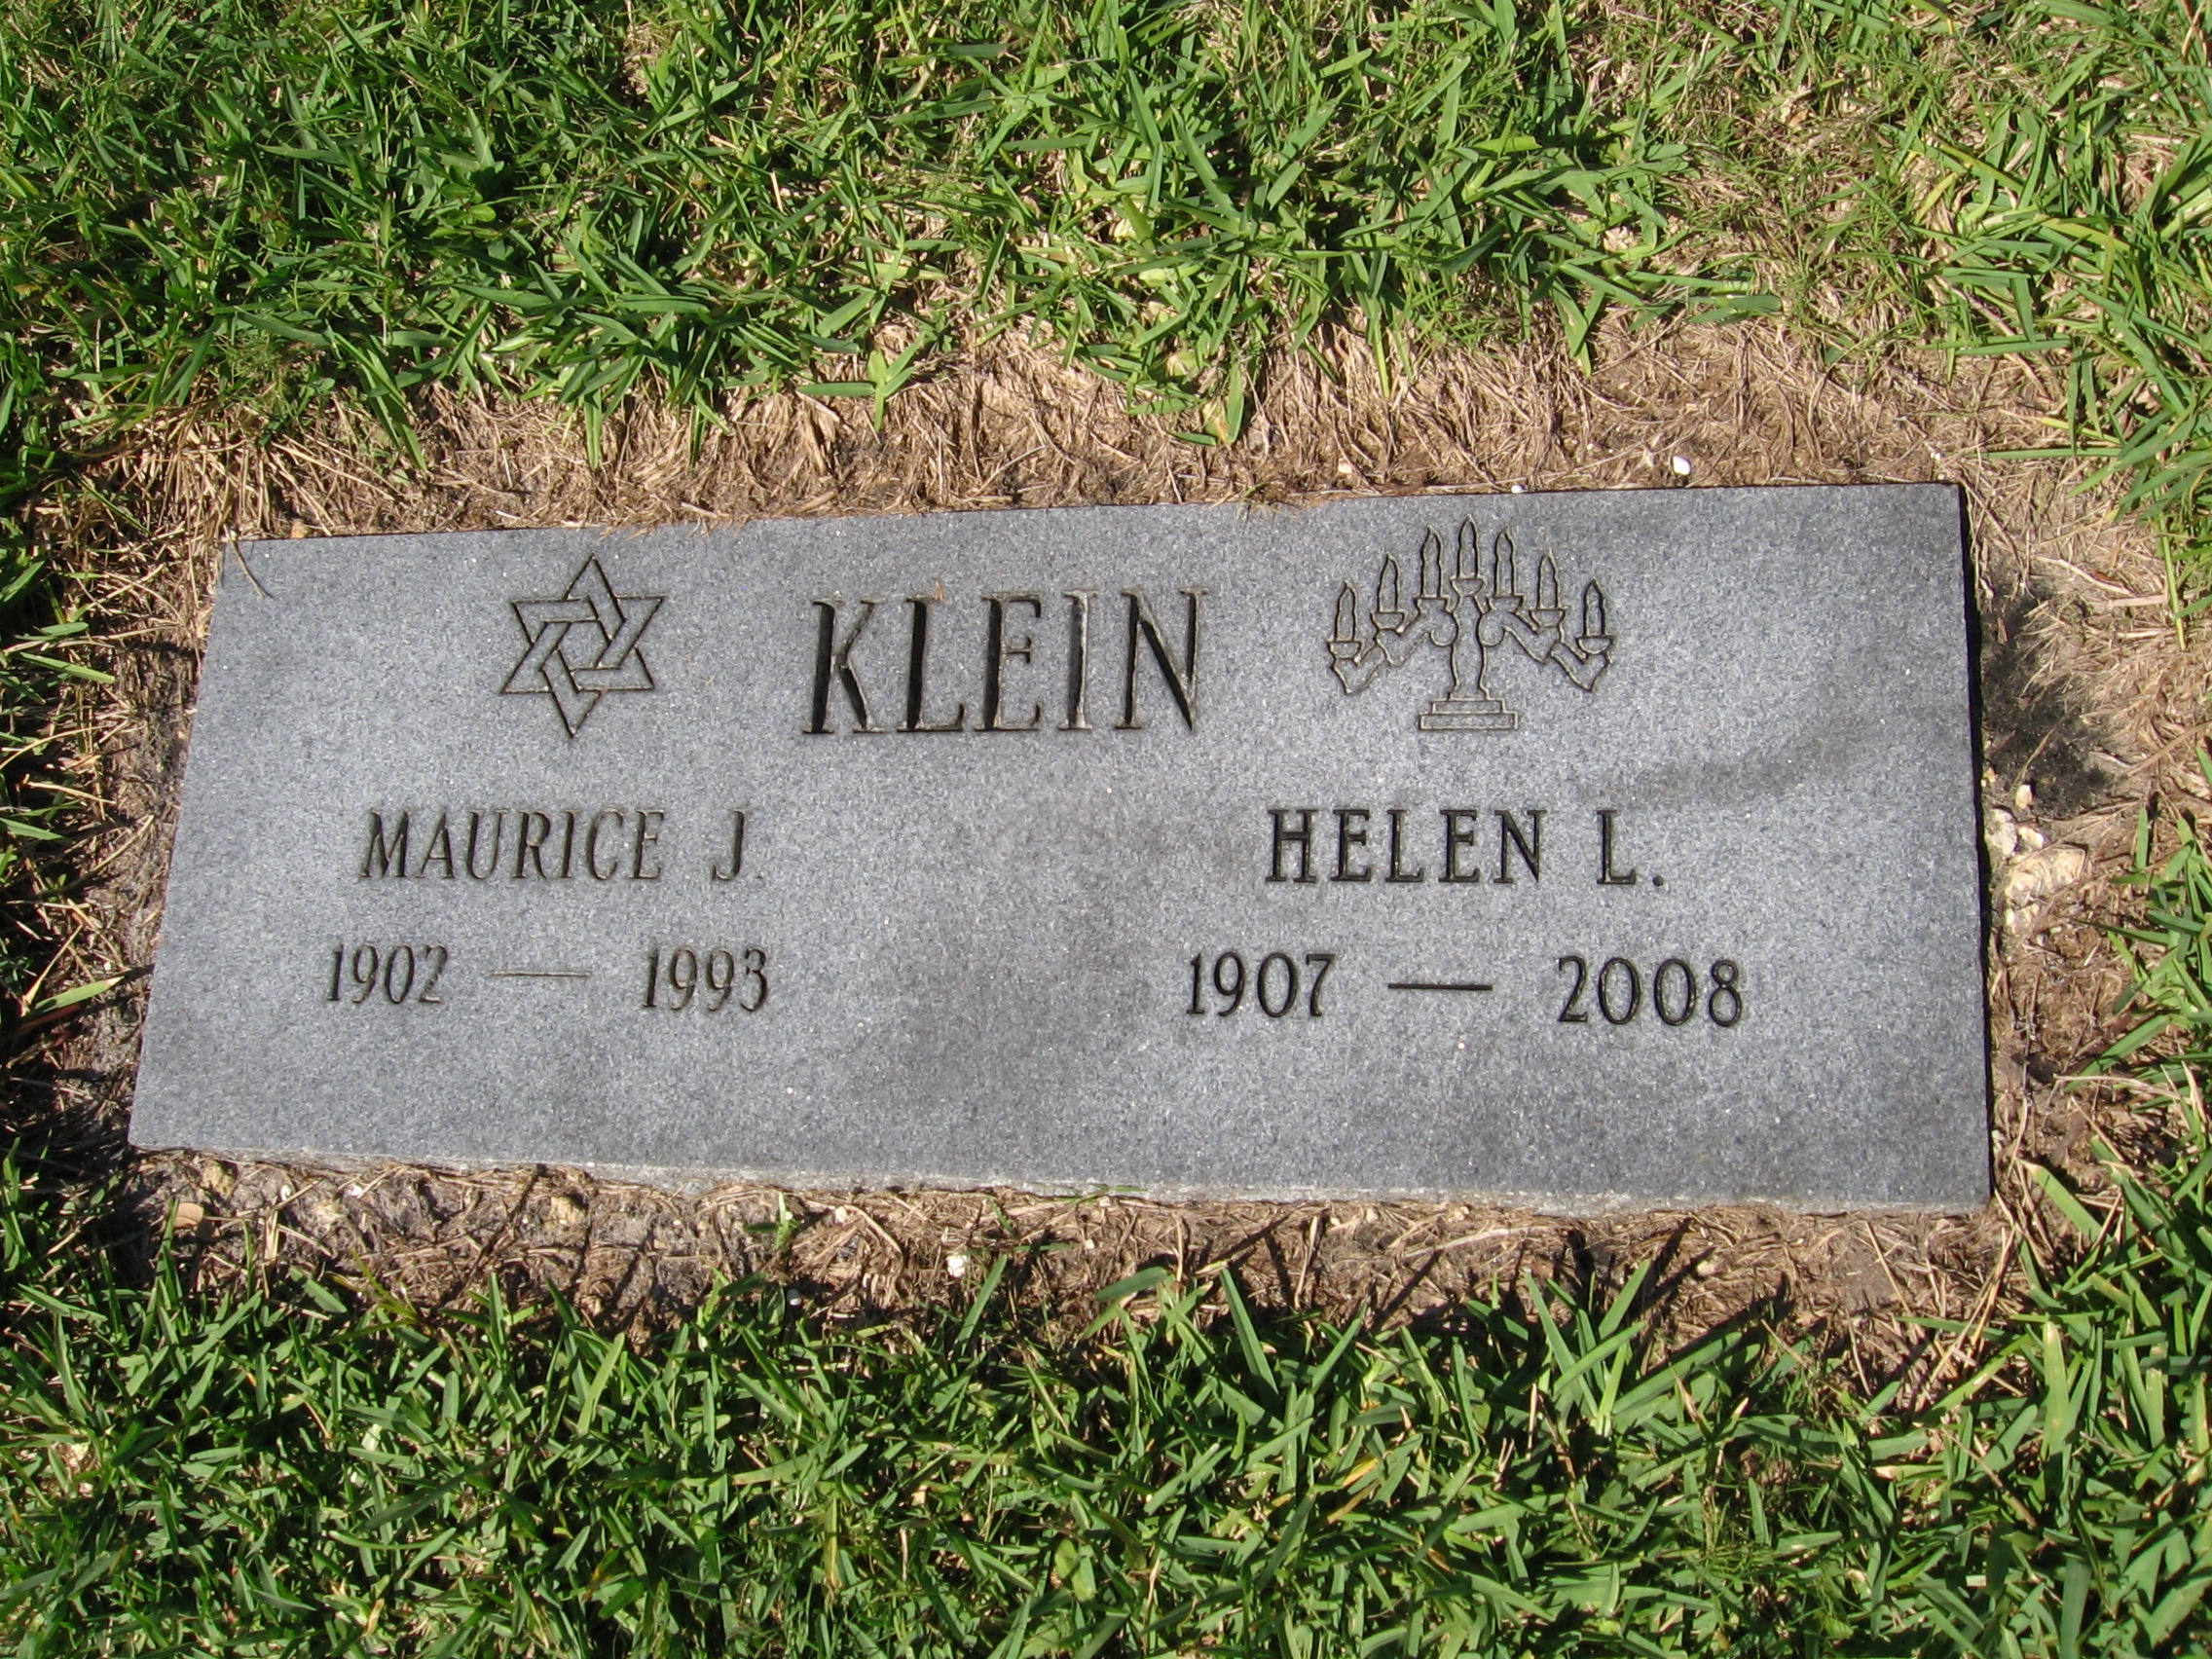 Helen L Klein